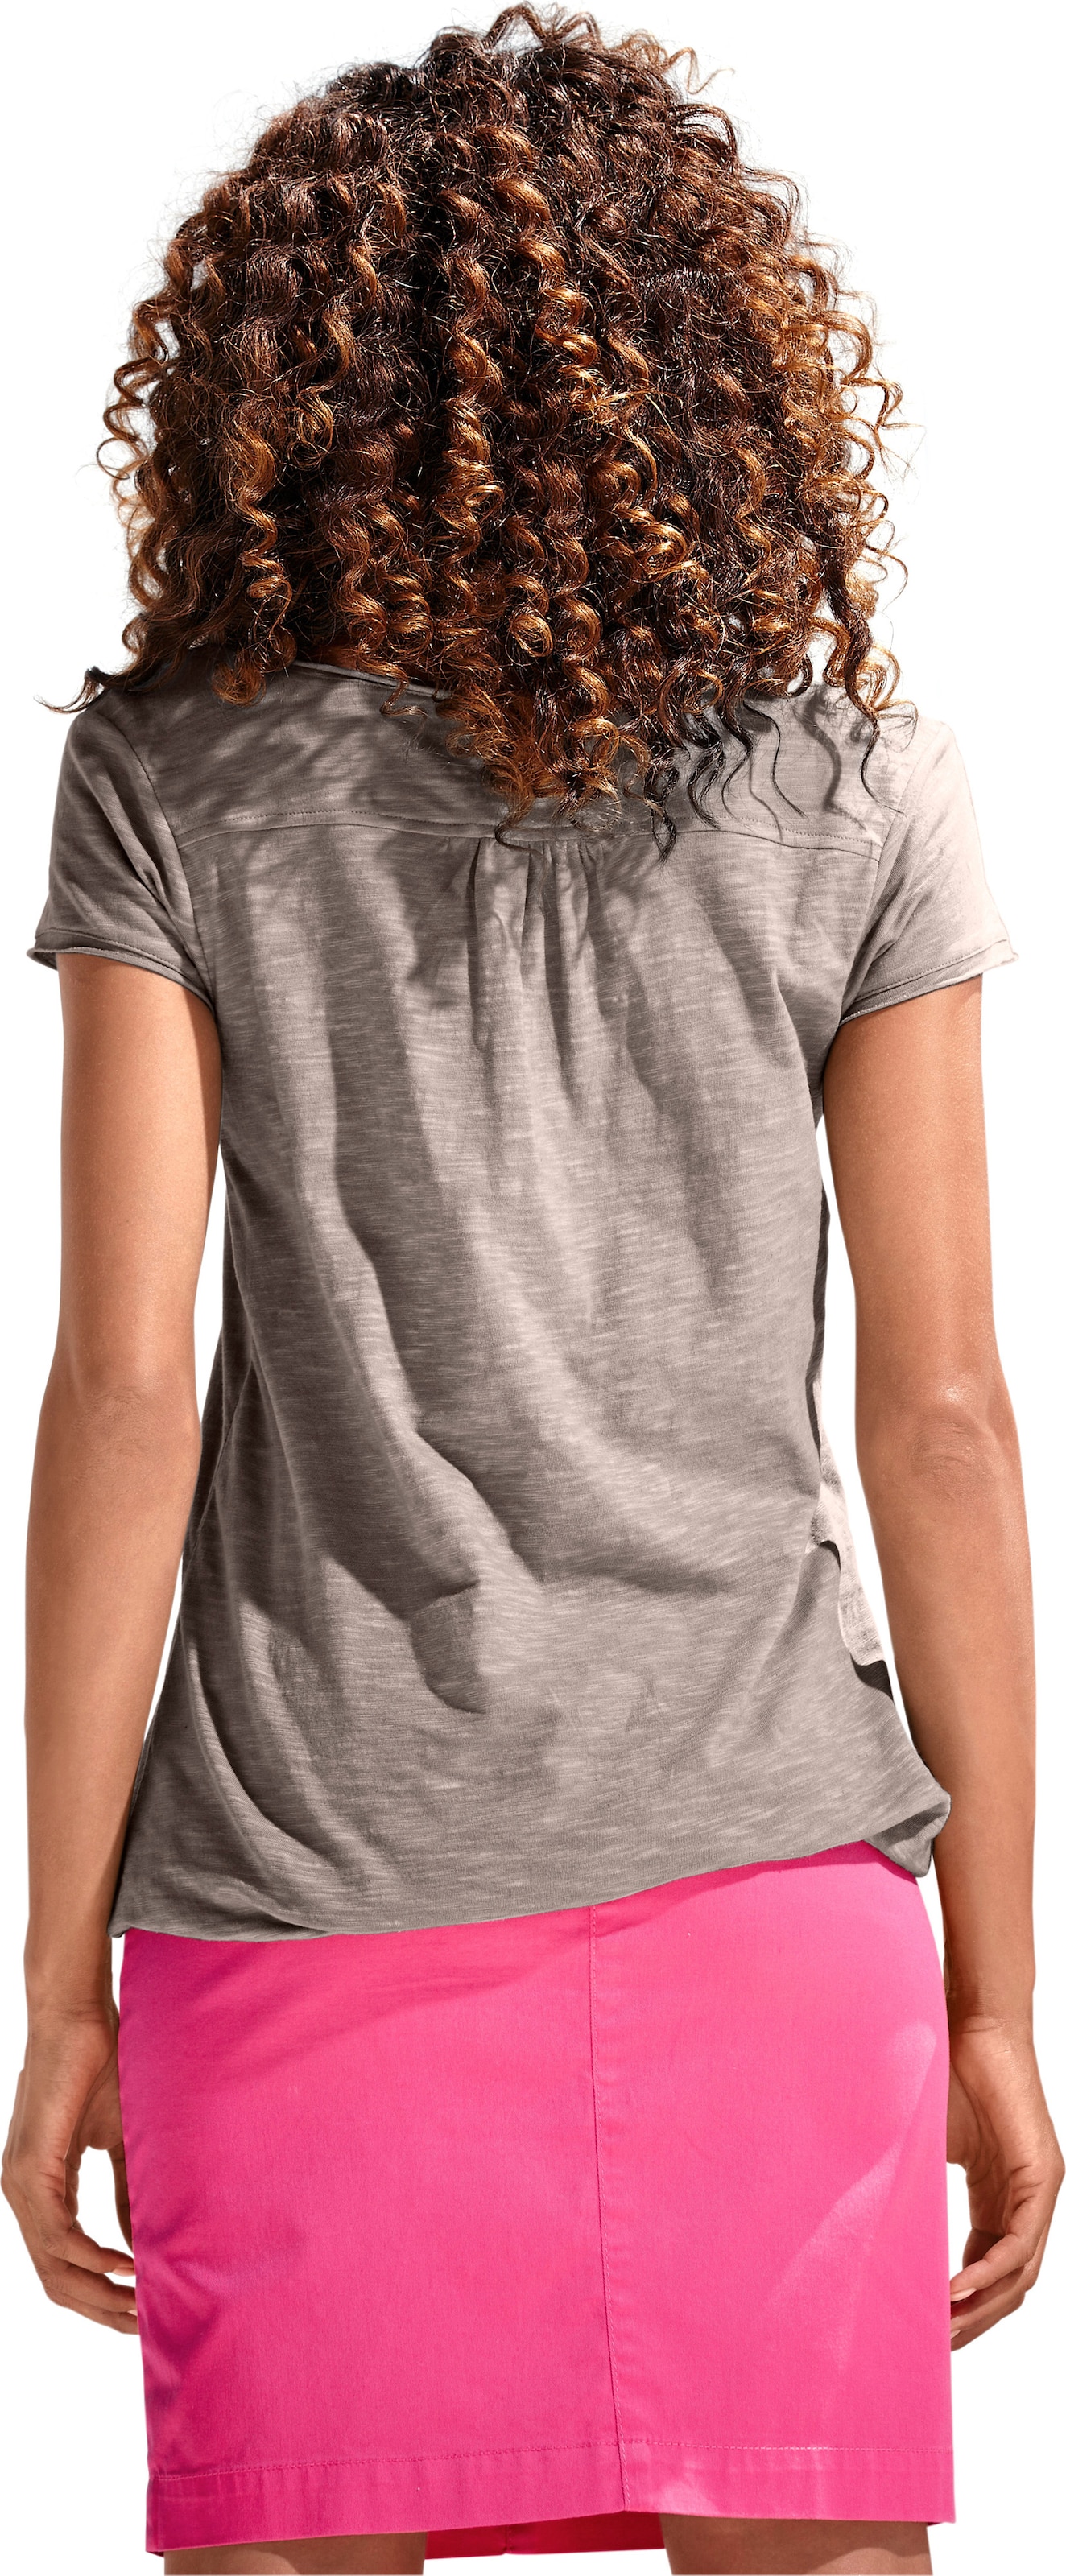 Spitzen Shirt  günstig Kaufen-Rundhals-Shirt in taupe von heine. Rundhals-Shirt in taupe von heine <![CDATA[Rundhals-Shirt Moderne Form mit Gummizugbund. Mit Spitzen-Details und schimmernden Knöpfen. Leichte Shirtware mit Flammé-Effekt.]]>. 